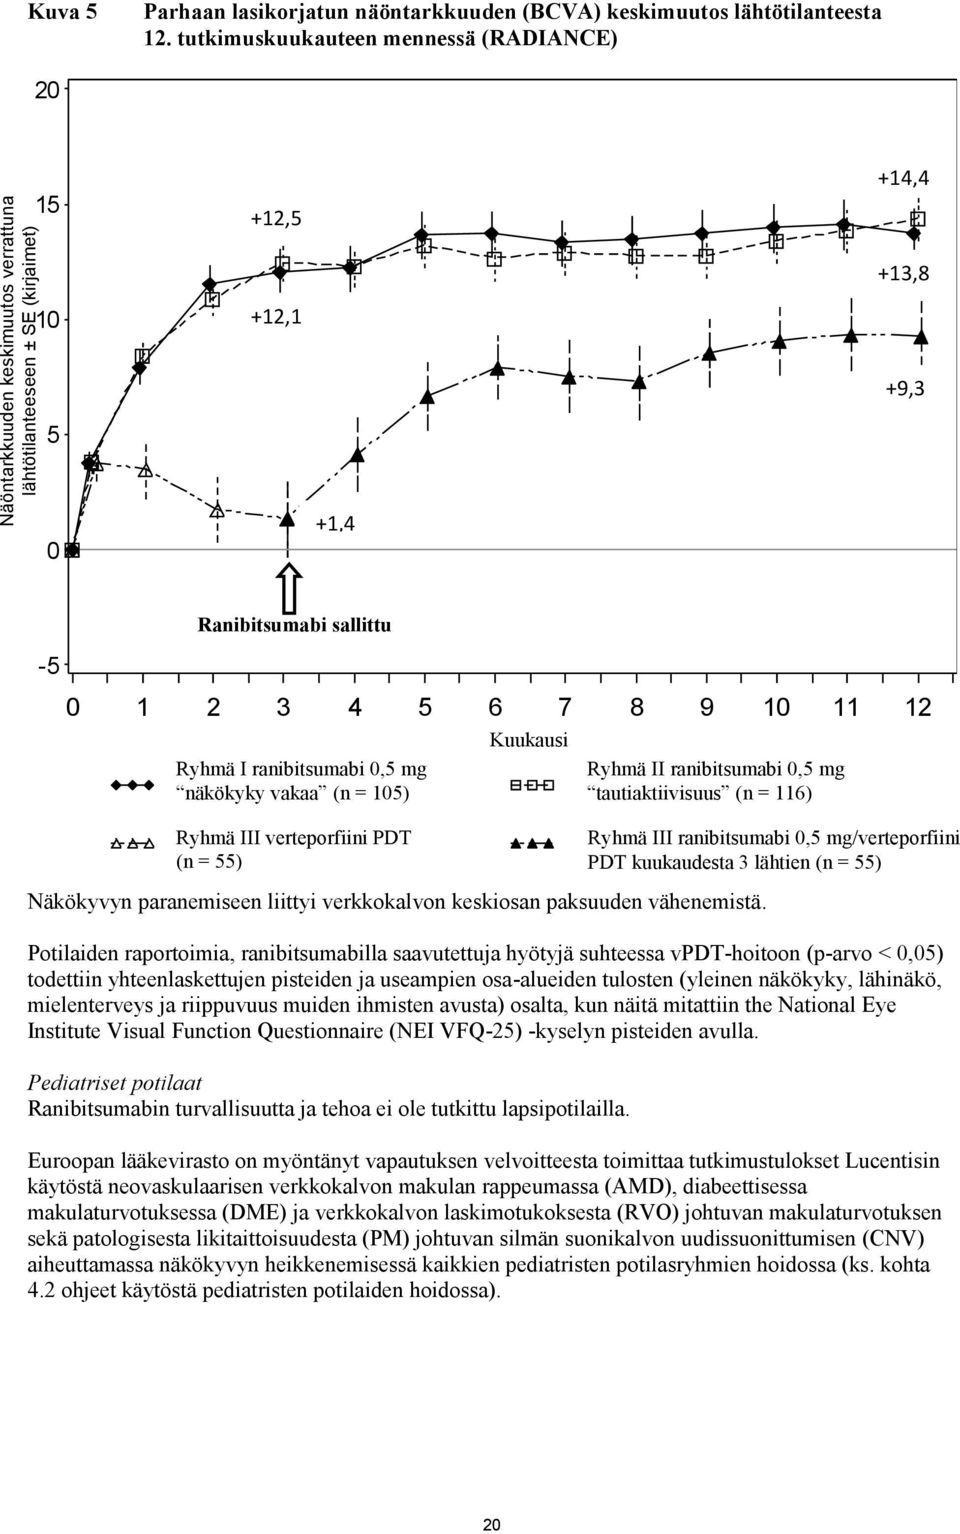 Kuukausi Ryhmä II ranibitsumabi 0,5 mg tautiaktiivisuus (n = 116) Ryhmä III verteporfiini PDT (n = 55) Ryhmä III ranibitsumabi 0,5 mg/verteporfiini PDT kuukaudesta 3 lähtien (n = 55) Näkökyvyn